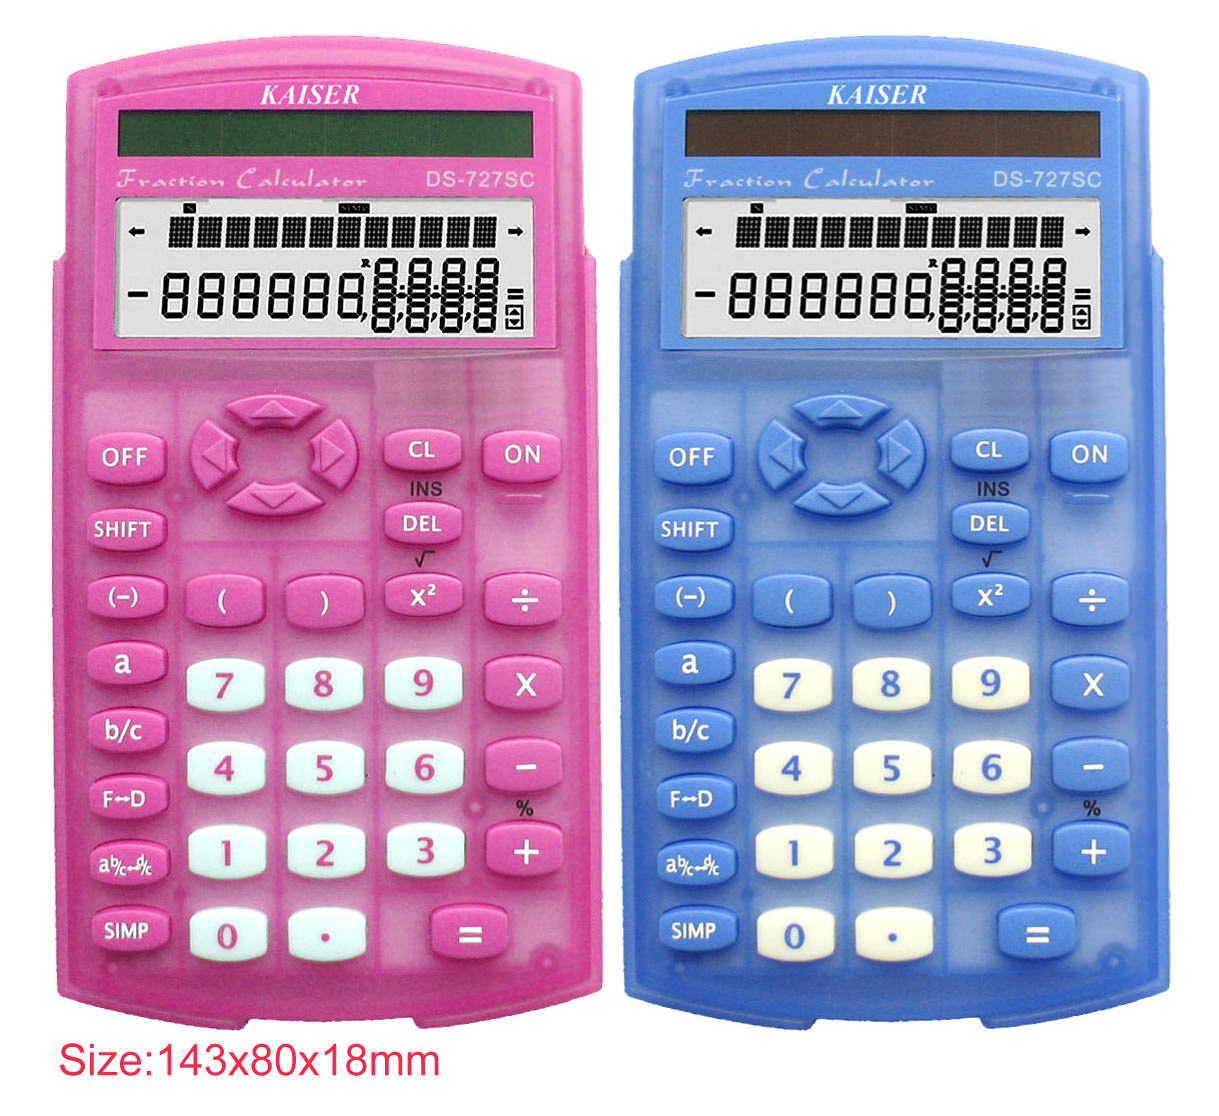  2-line 10 digit scientific calculator